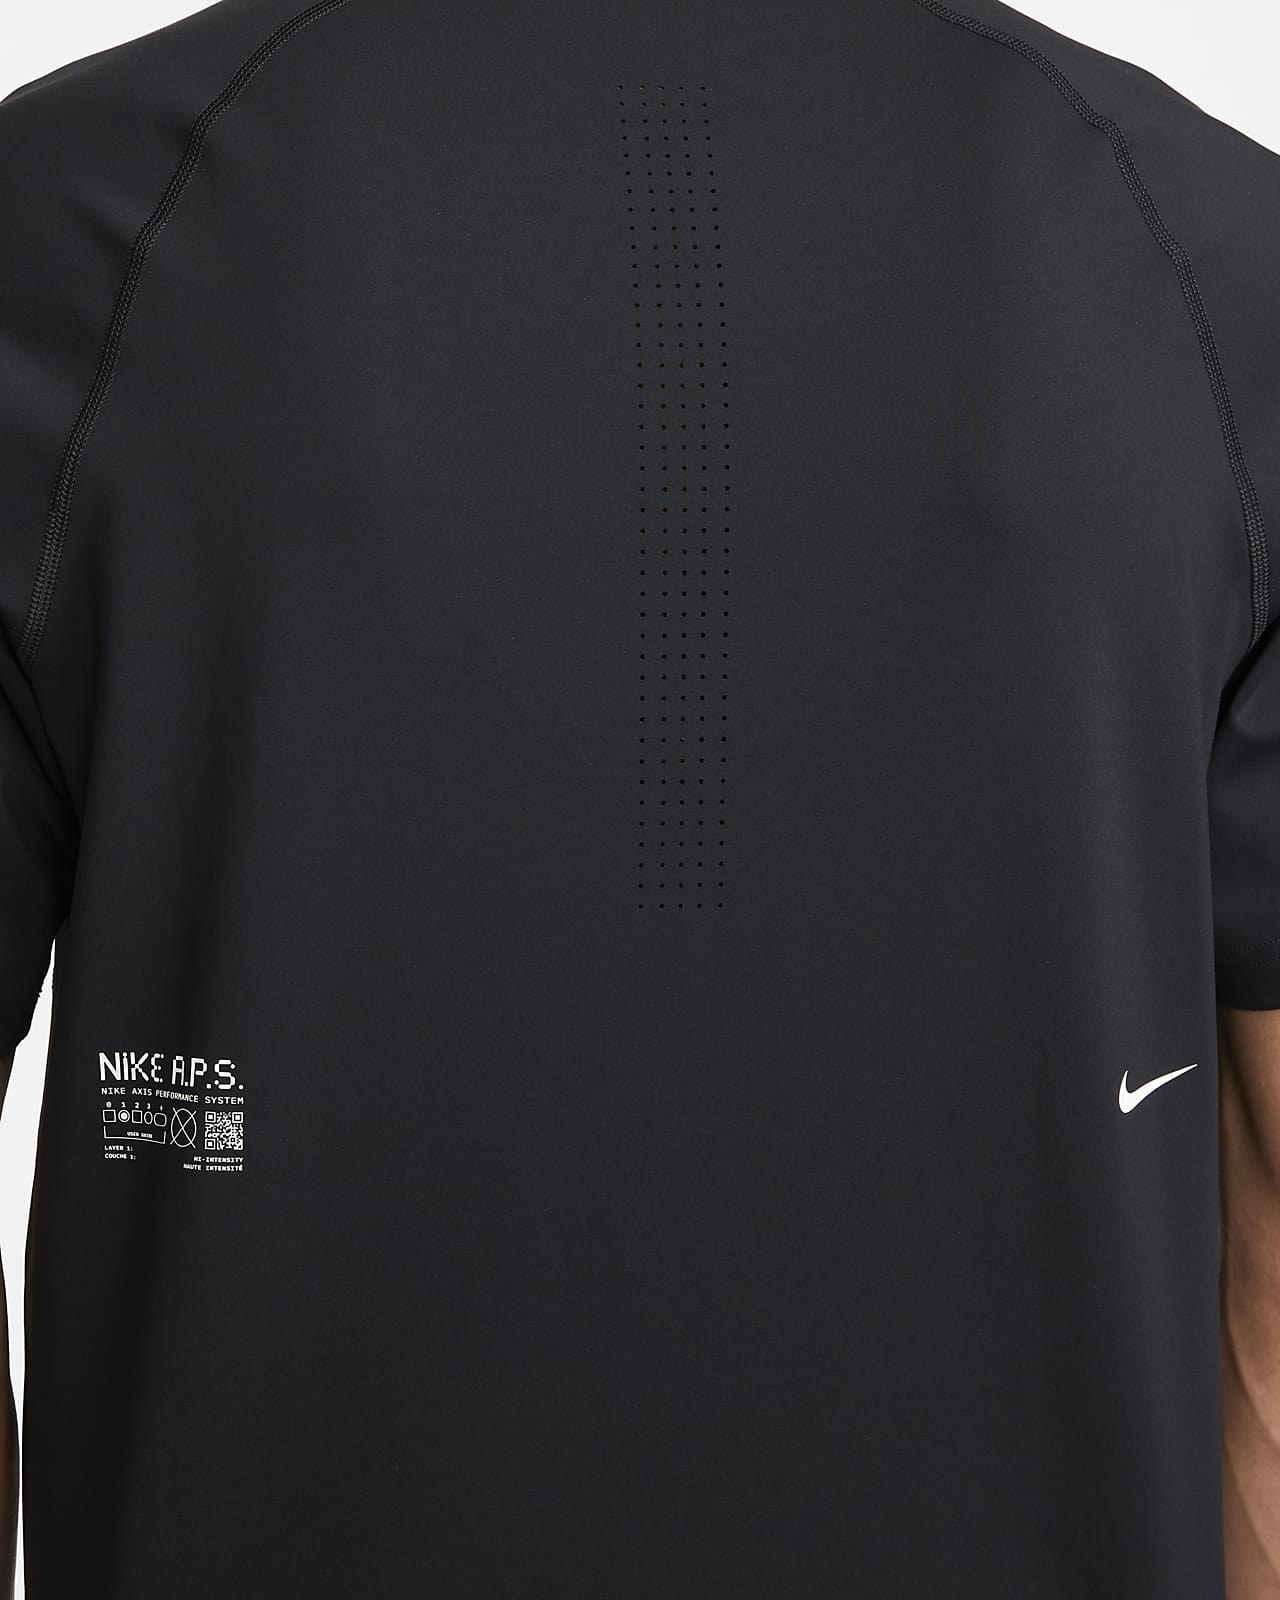 Slægtsforskning I mængde klassisk Nike Dri-FIT ADV A.P.S. Men's Short-Sleeve Fitness Top. Nike.com